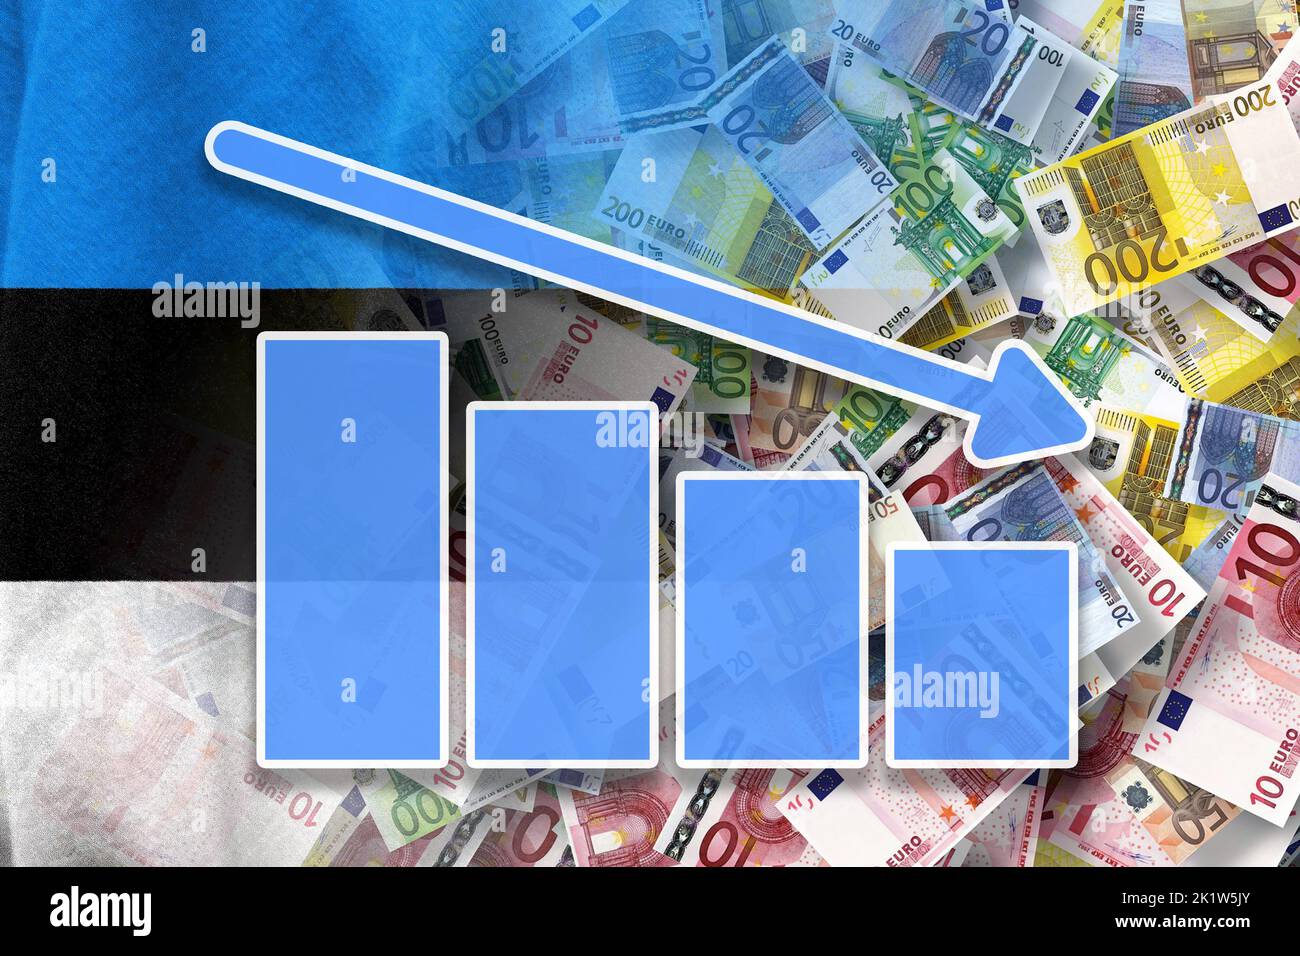 Grafico dell'economia: Freccia verso il basso, banconote in euro e bandiera dell'Estonia (moneta, economia, affari, finanza, crisi) Foto Stock